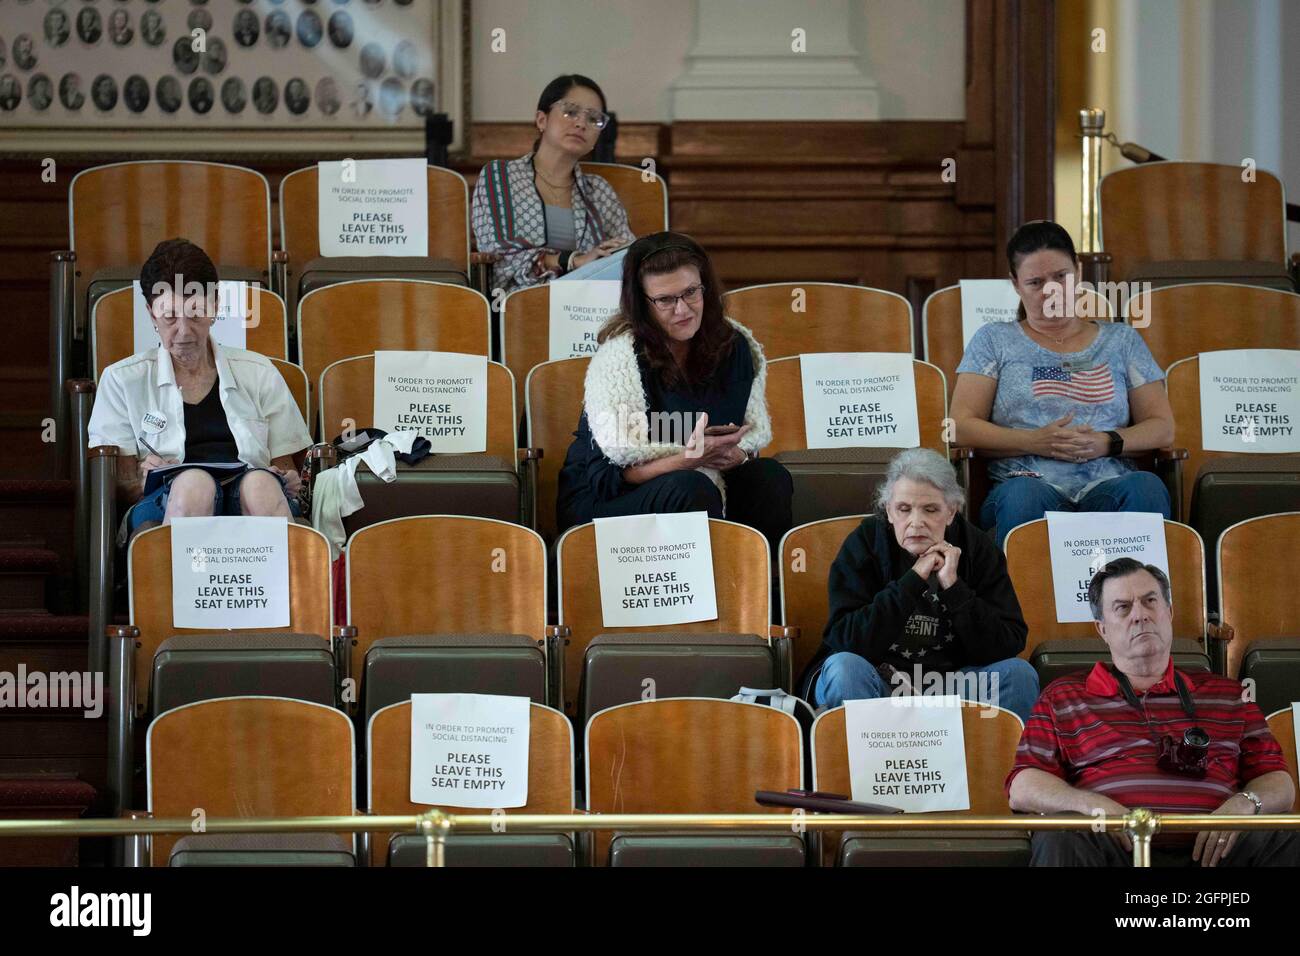 Les spectateurs écoutent la galerie tandis que la Maison du Texas débat SB 1, une mesure menée par les Républicains qui durerait les procédures de vote au Texas, y compris une interdiction des votes de 24 heures et des restrictions par la poste. Crédit : Bob Daemmrich/Alay Live News Banque D'Images